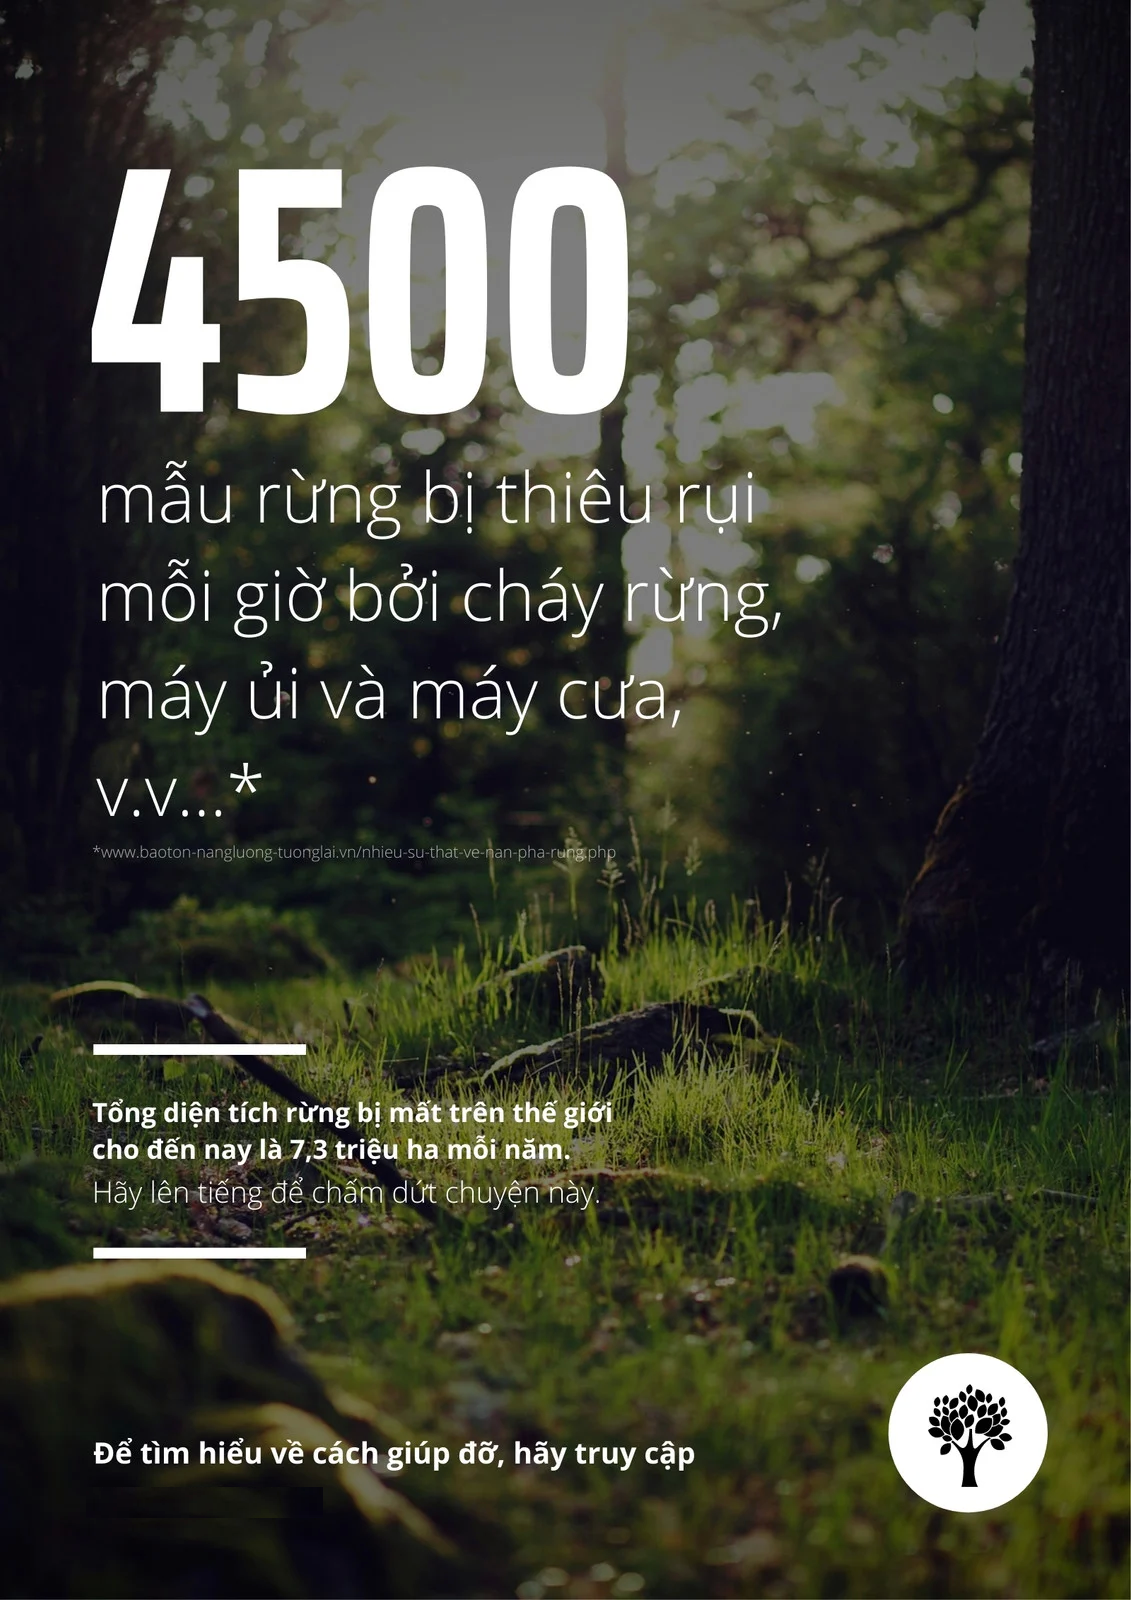 Poster bảo vệ rừng xanh đẹp